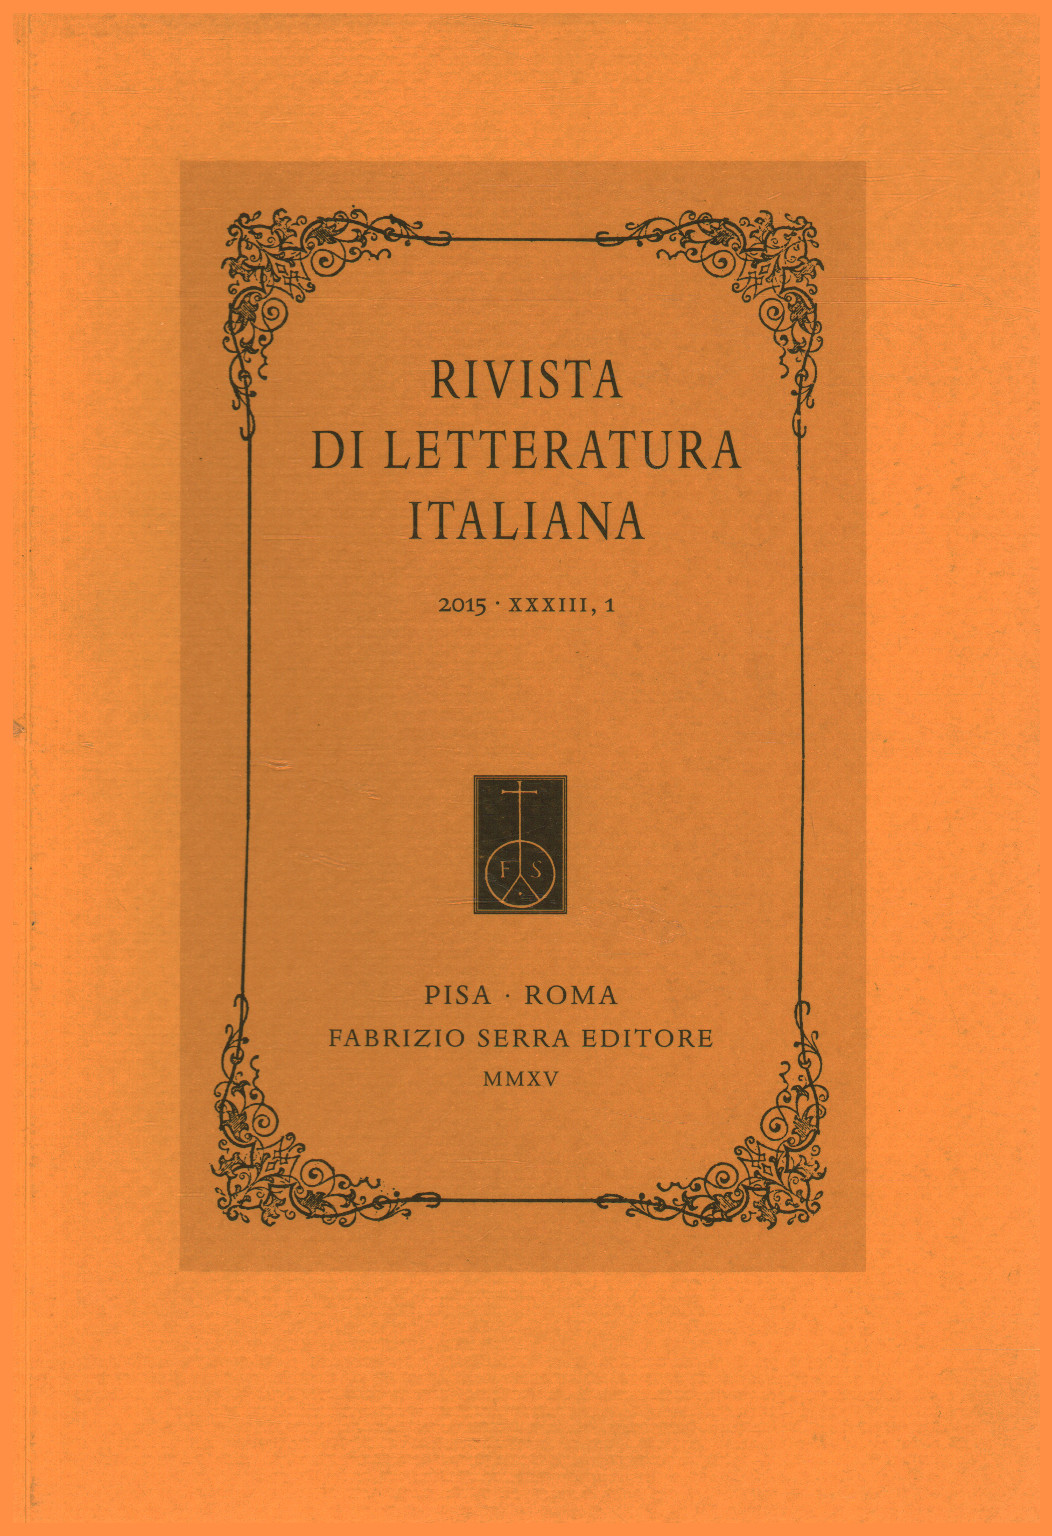 Rivista di letteratura italiana 2015,XXXIII,1, s.a.